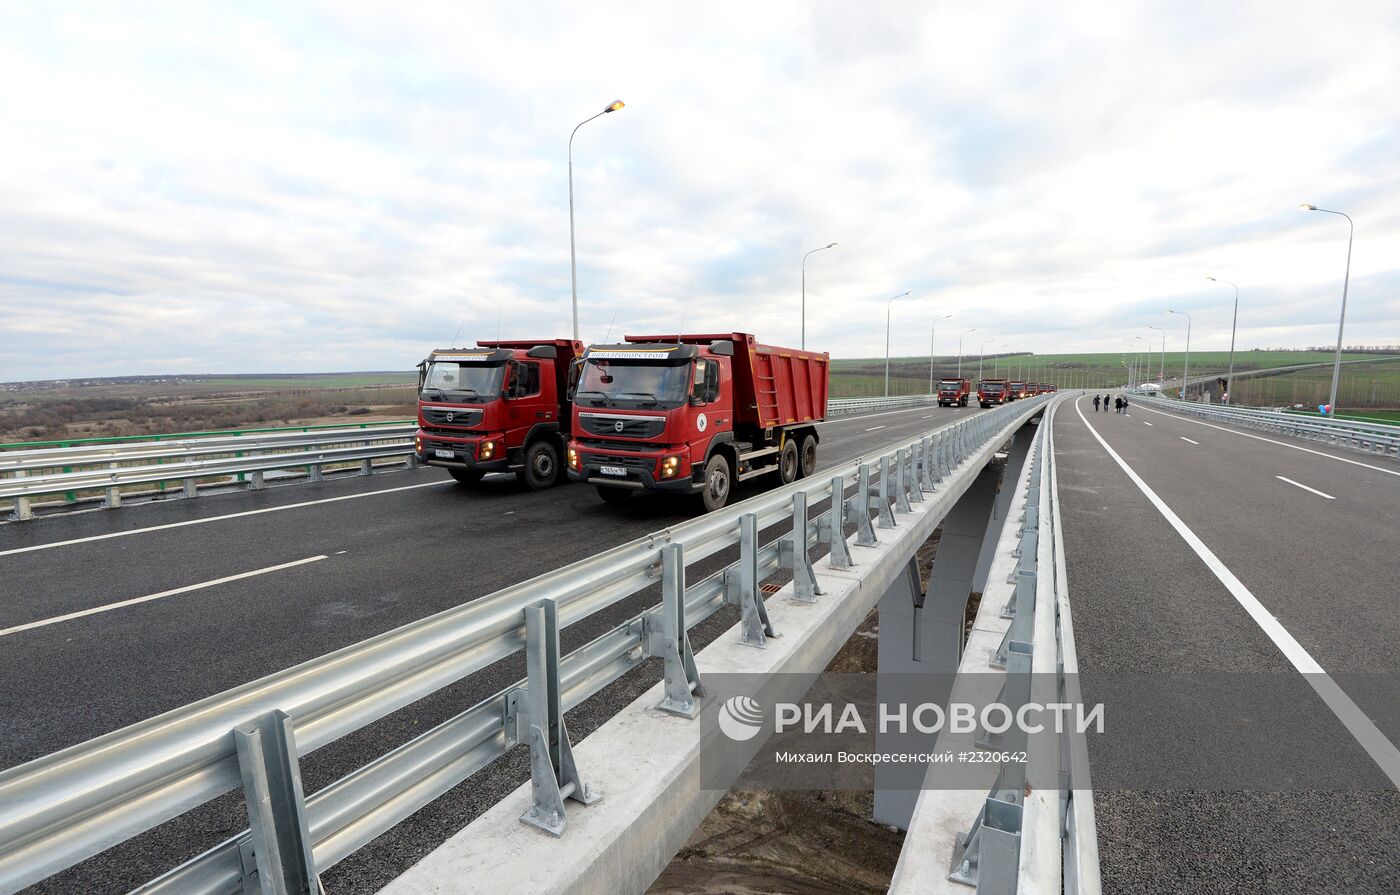 Открытие двух новых скоростных платных участков на автодороге М-4 "Дон"